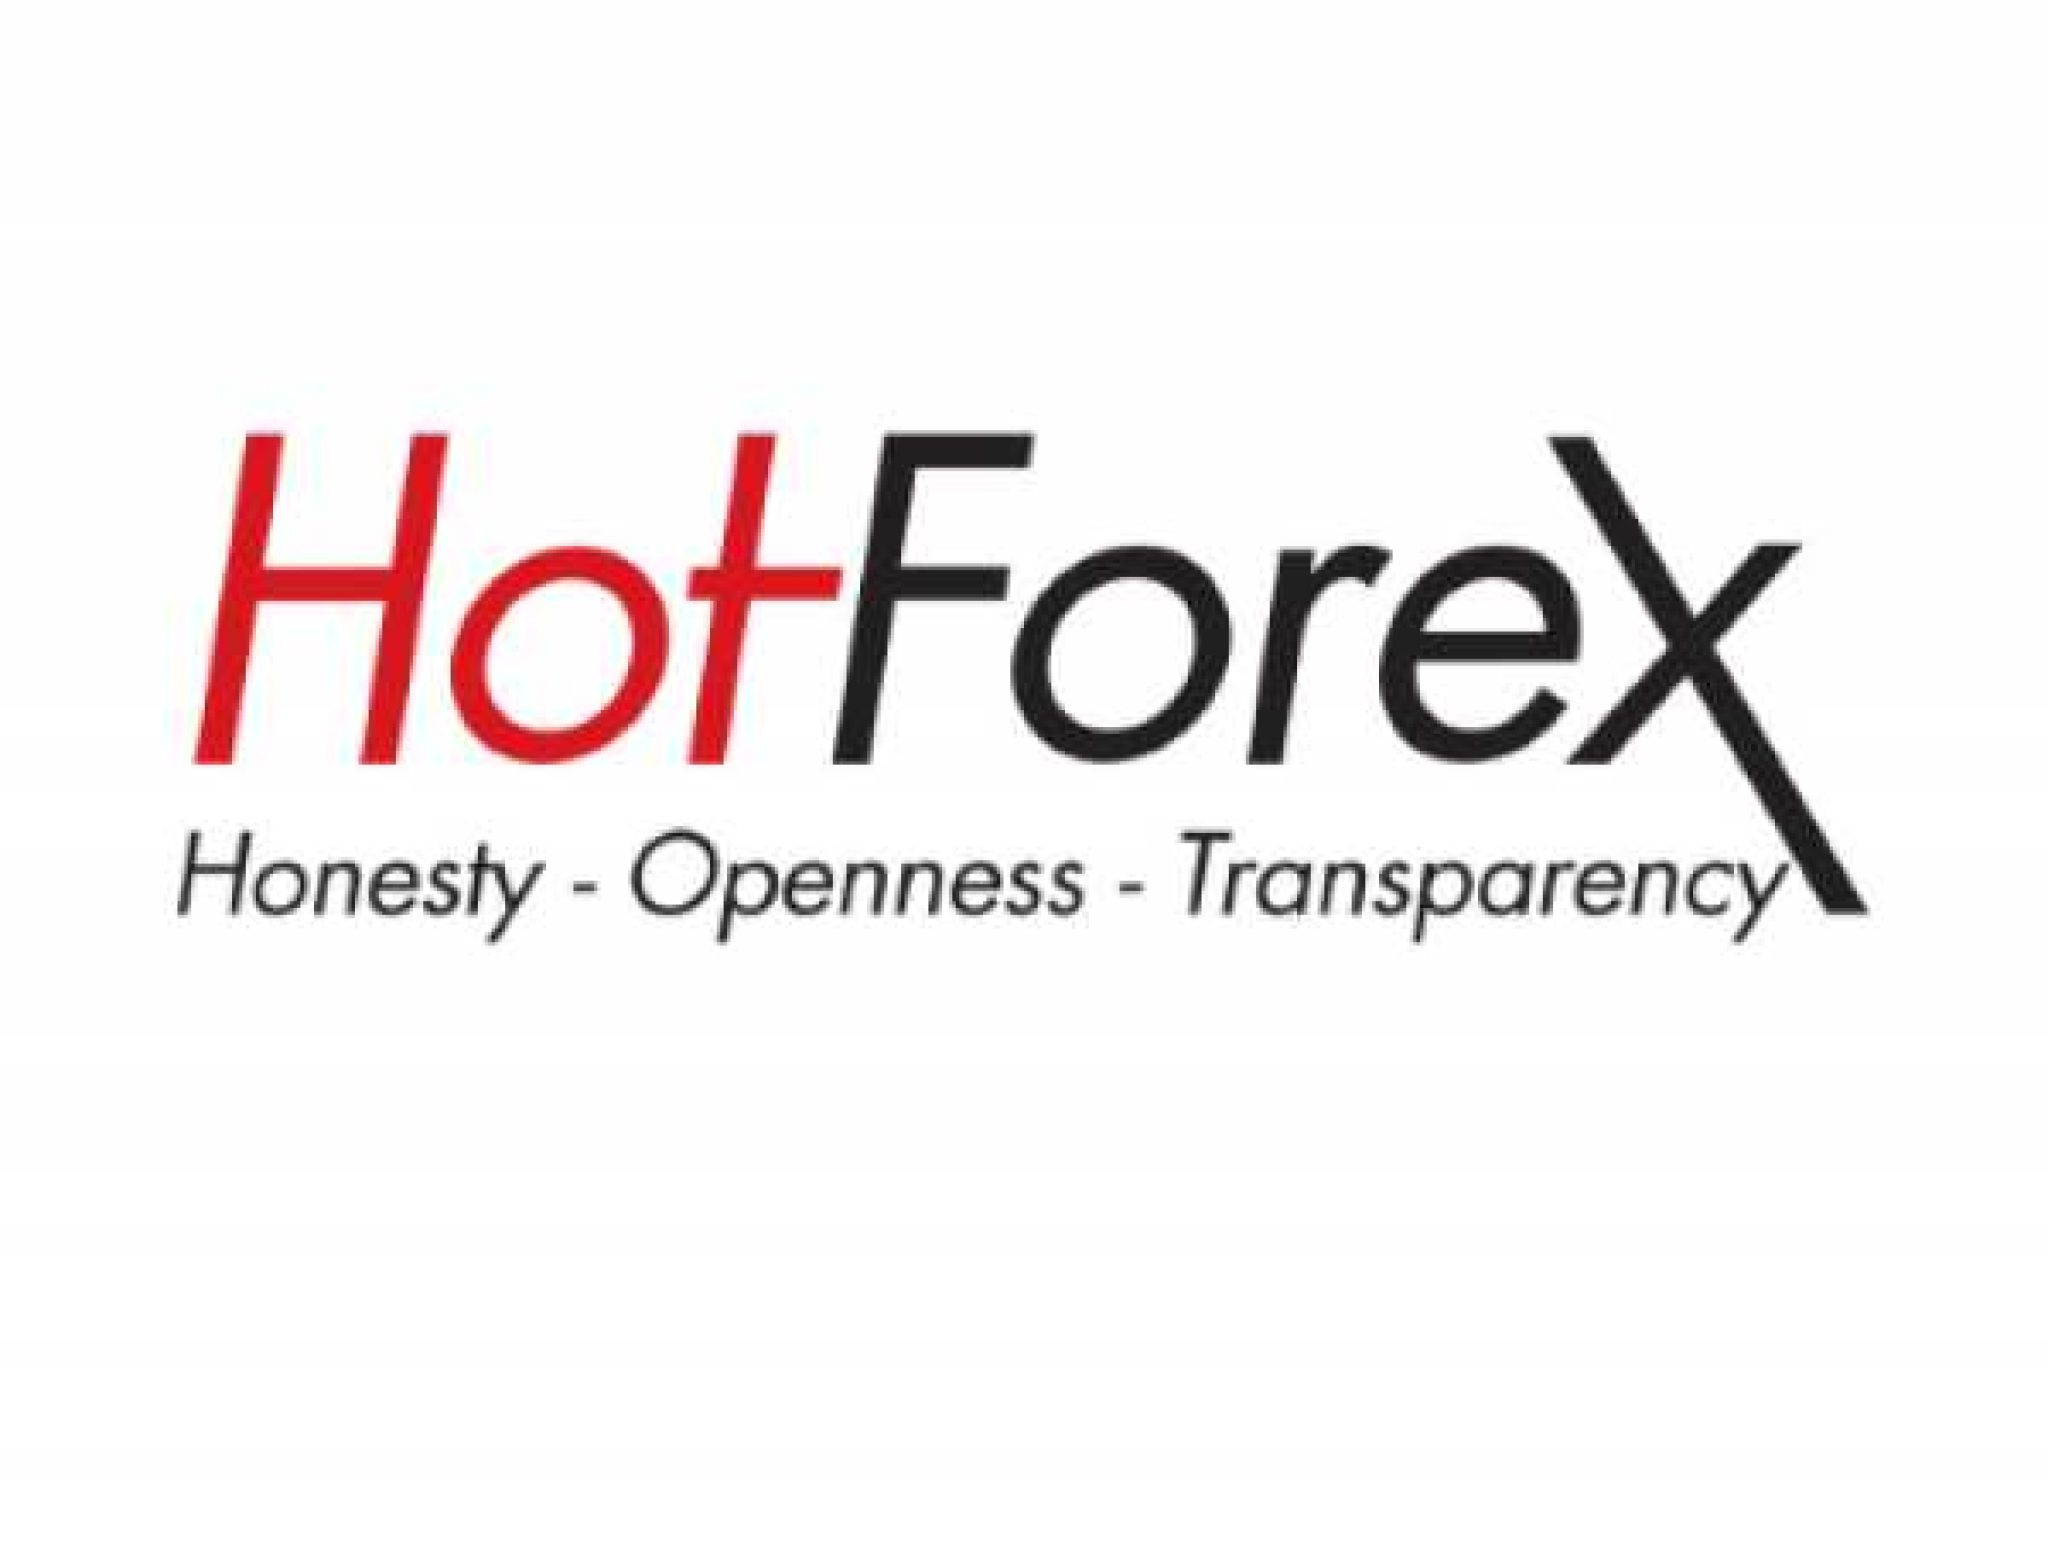 hotforex logo game